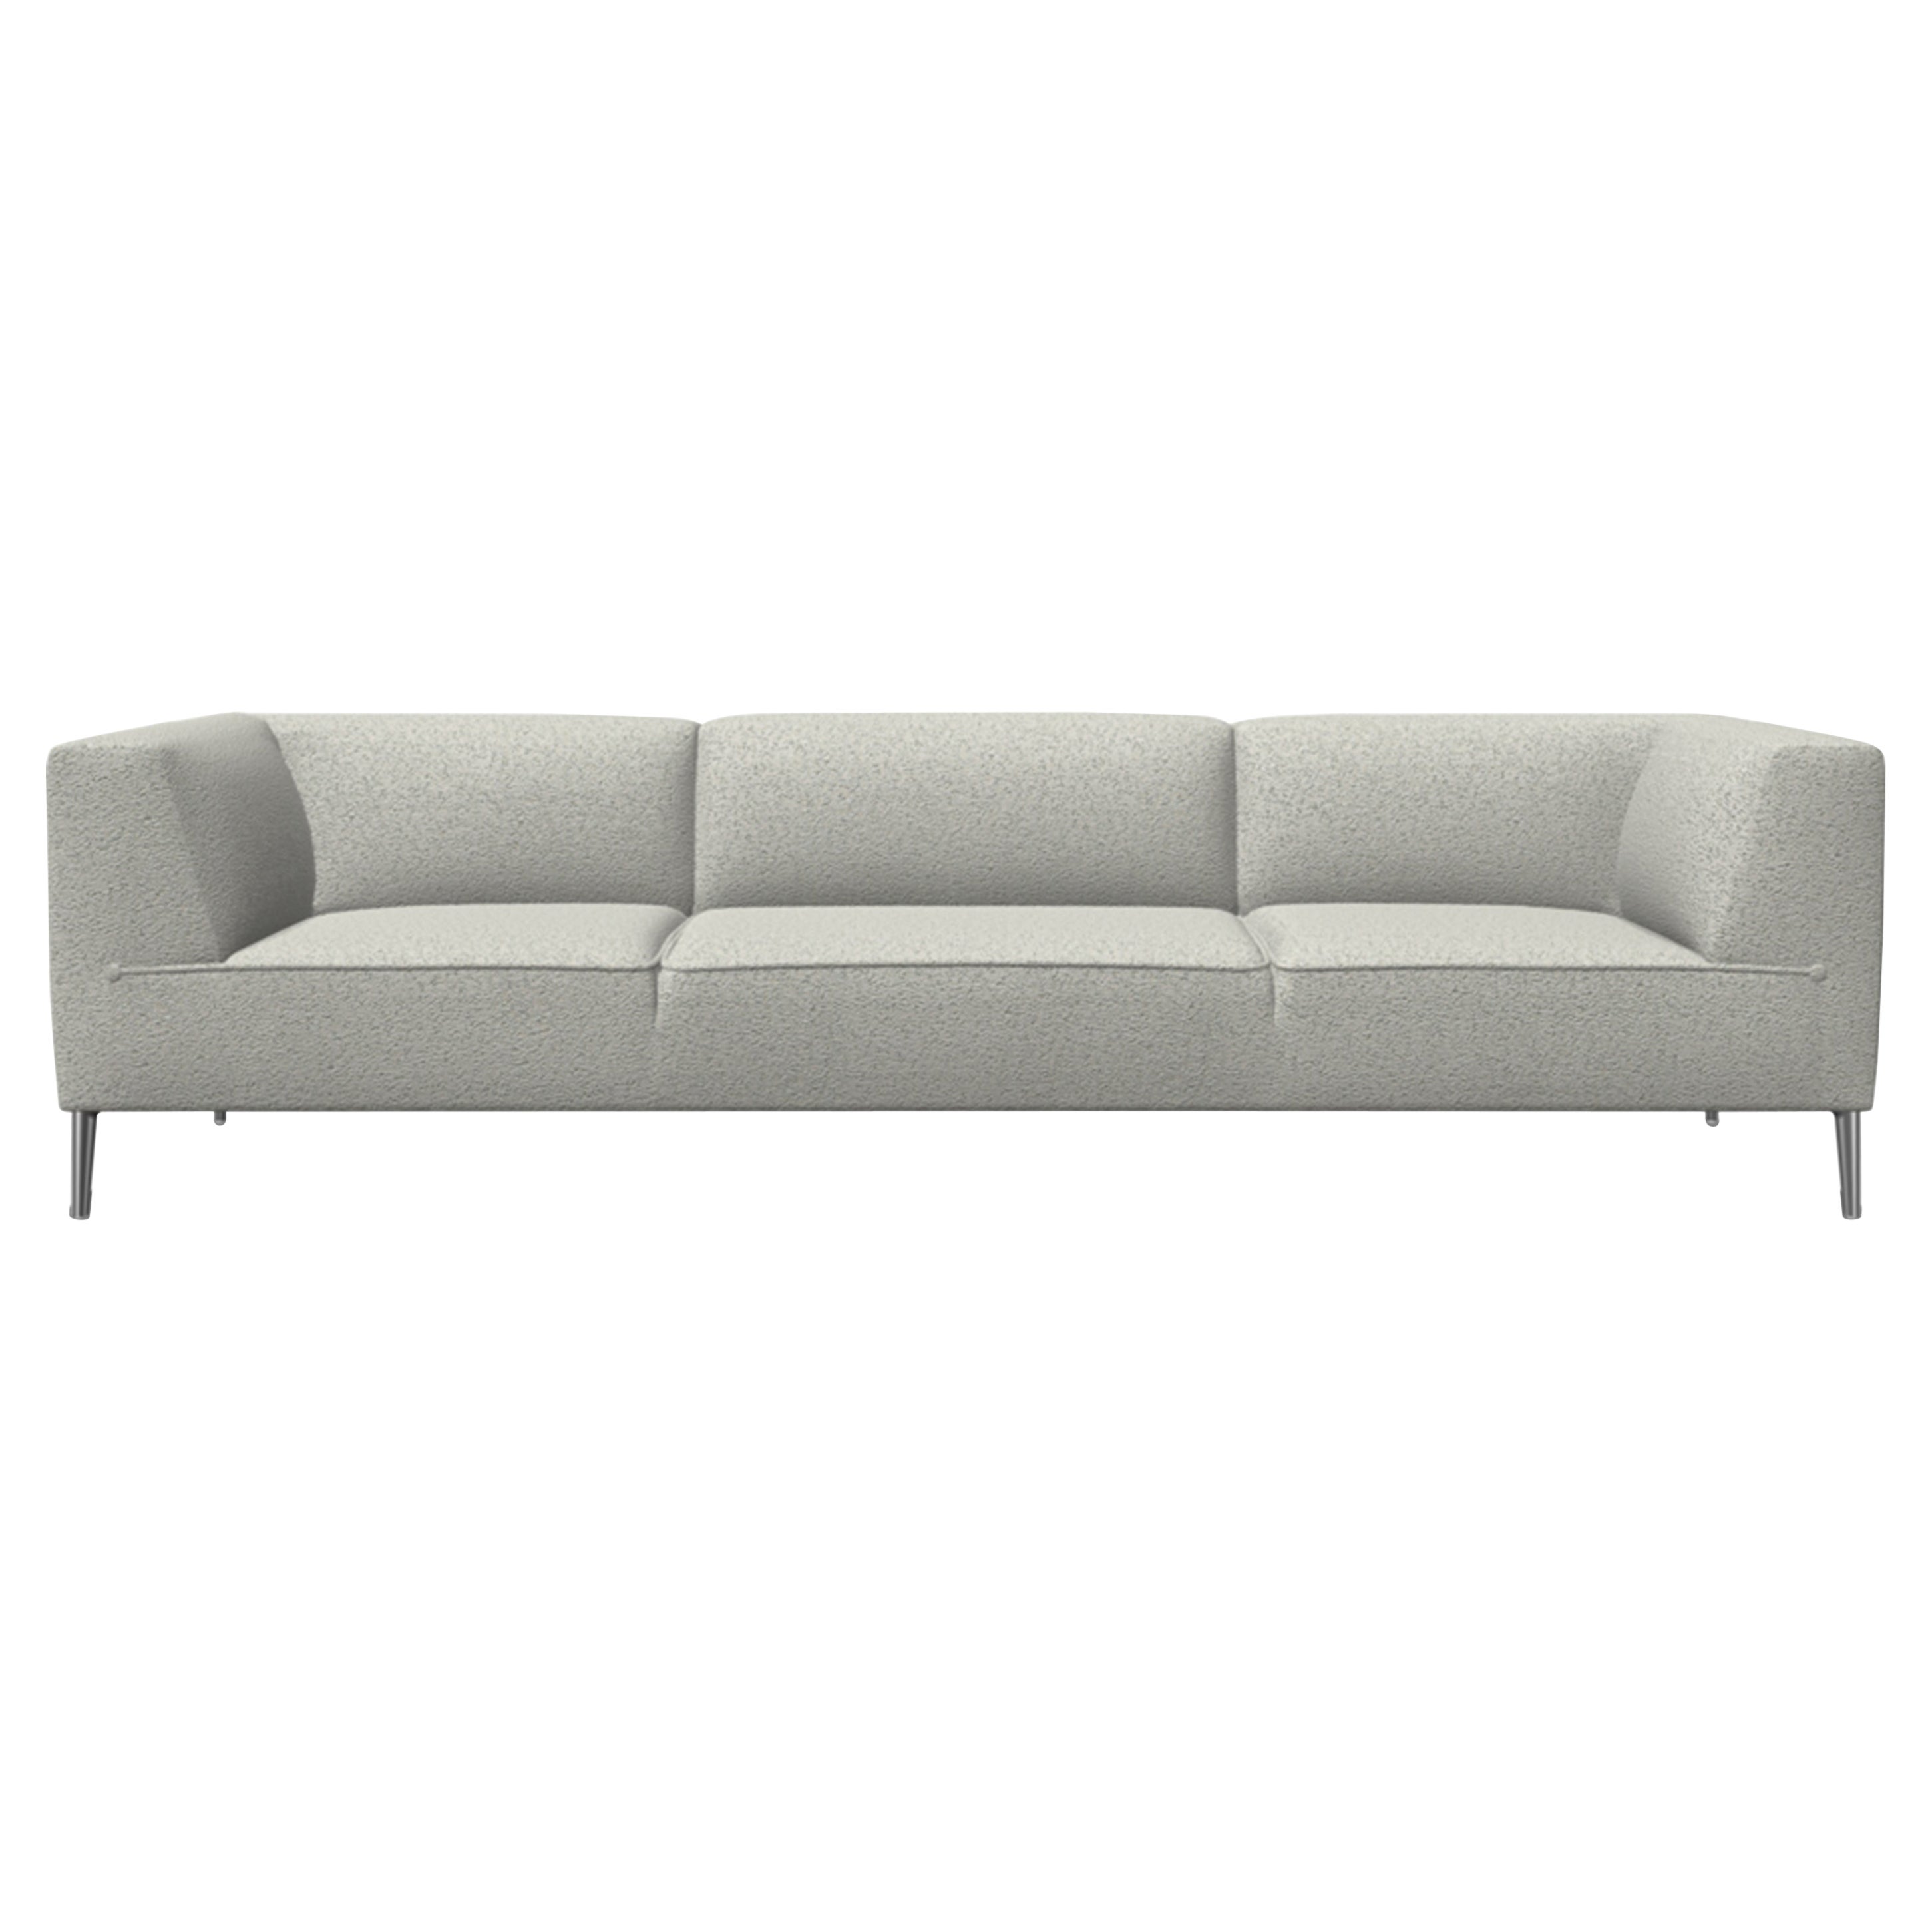 Moooi Dreisitziges Sofa So Good in Tonica mit 2 Polsterungen und polierten Aluminiumfüßen